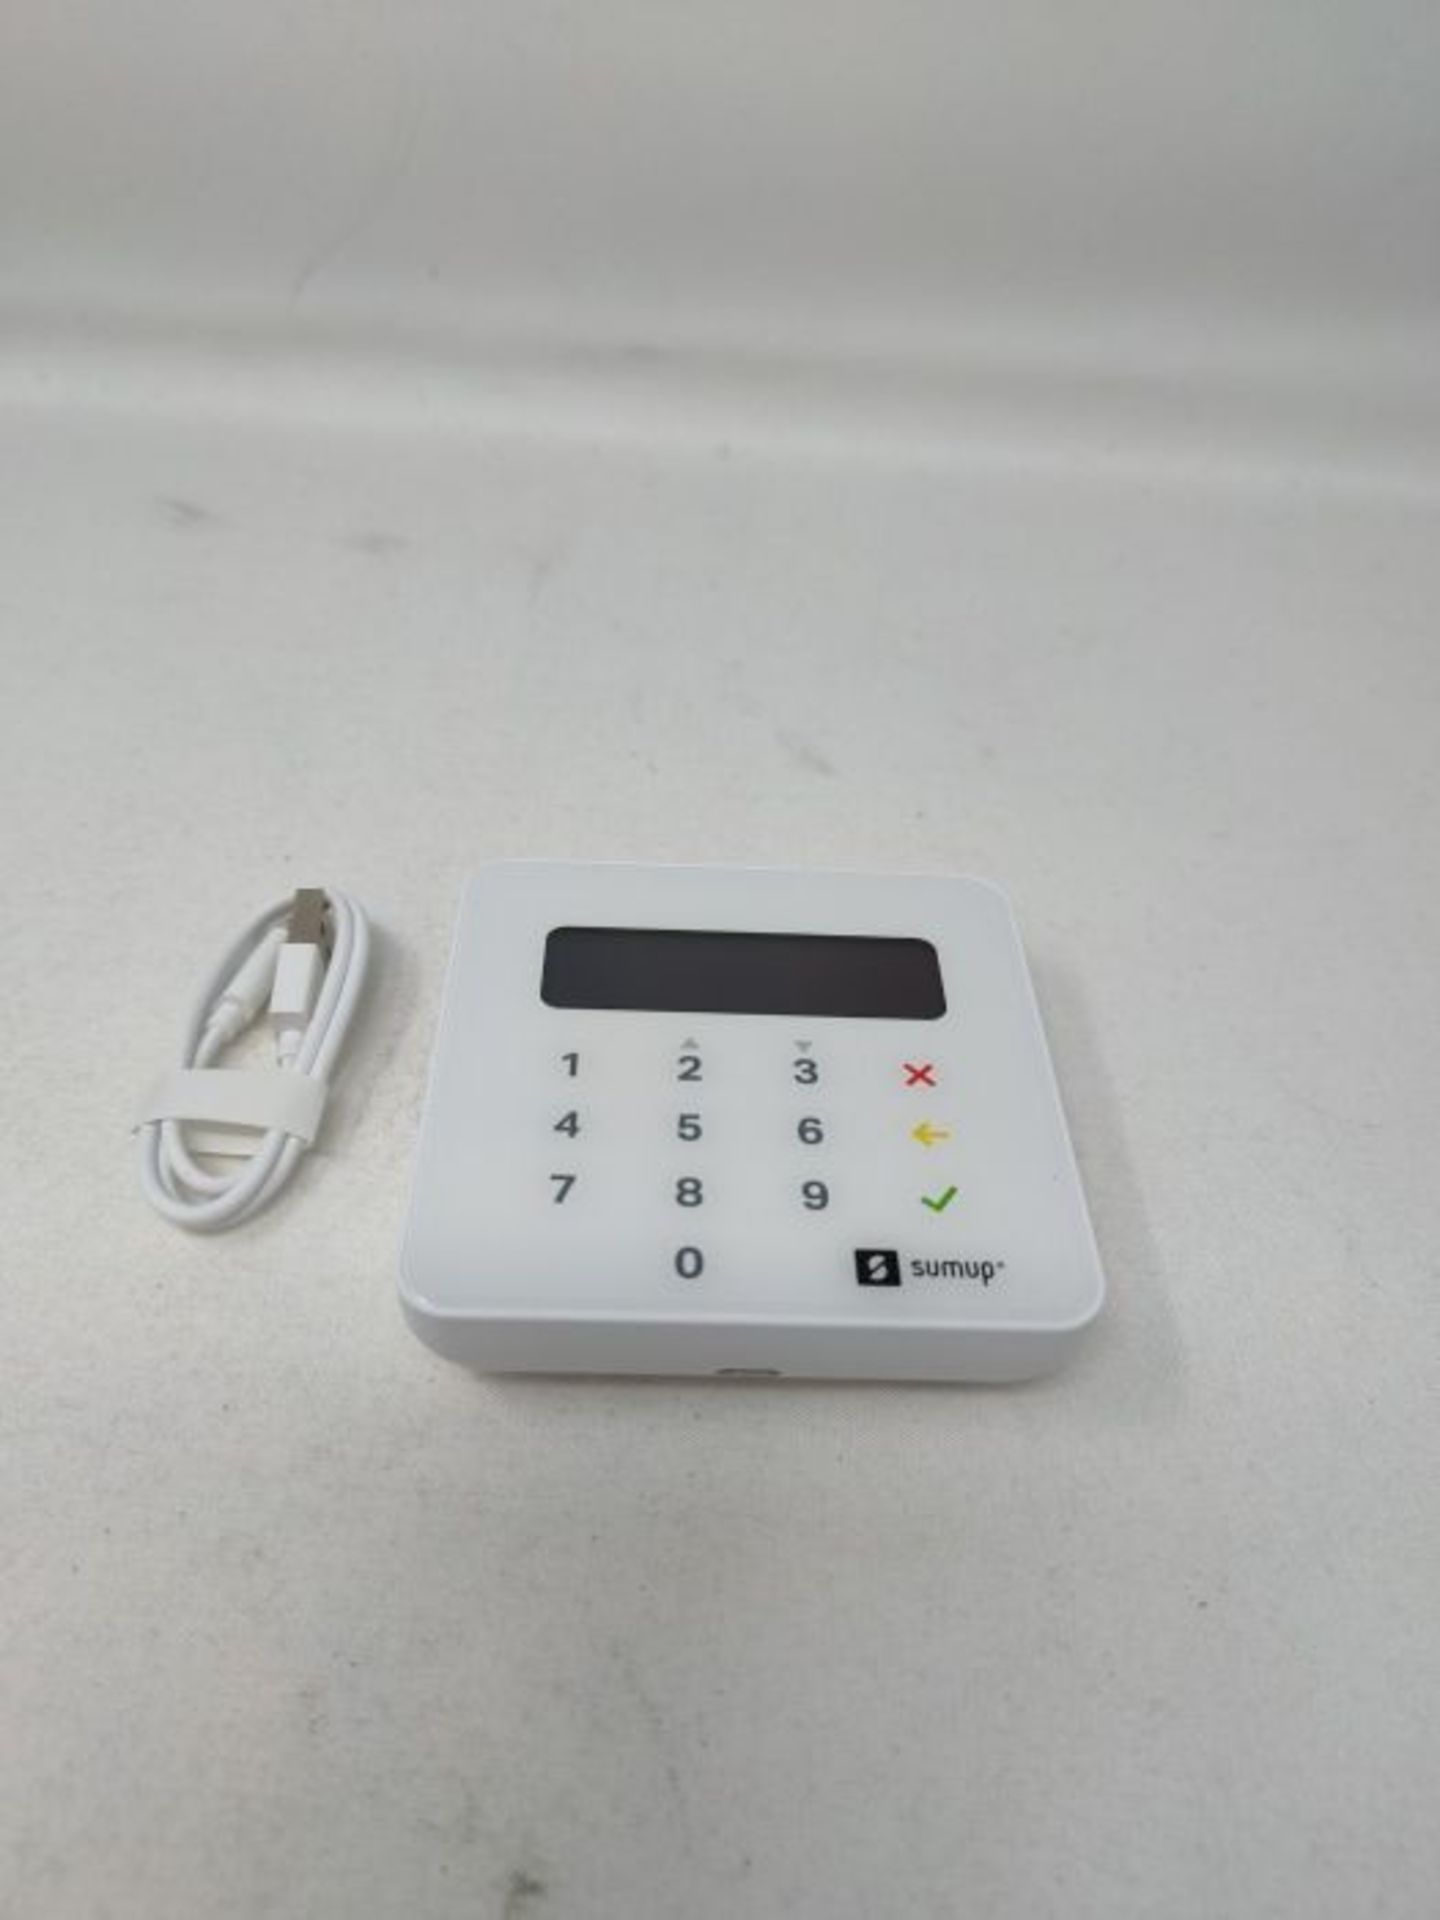 SumUp Air mobiles Kartenterminal zum bargeldlosen Bezahlen mit EC Karte, Kreditkarte A - Image 3 of 3